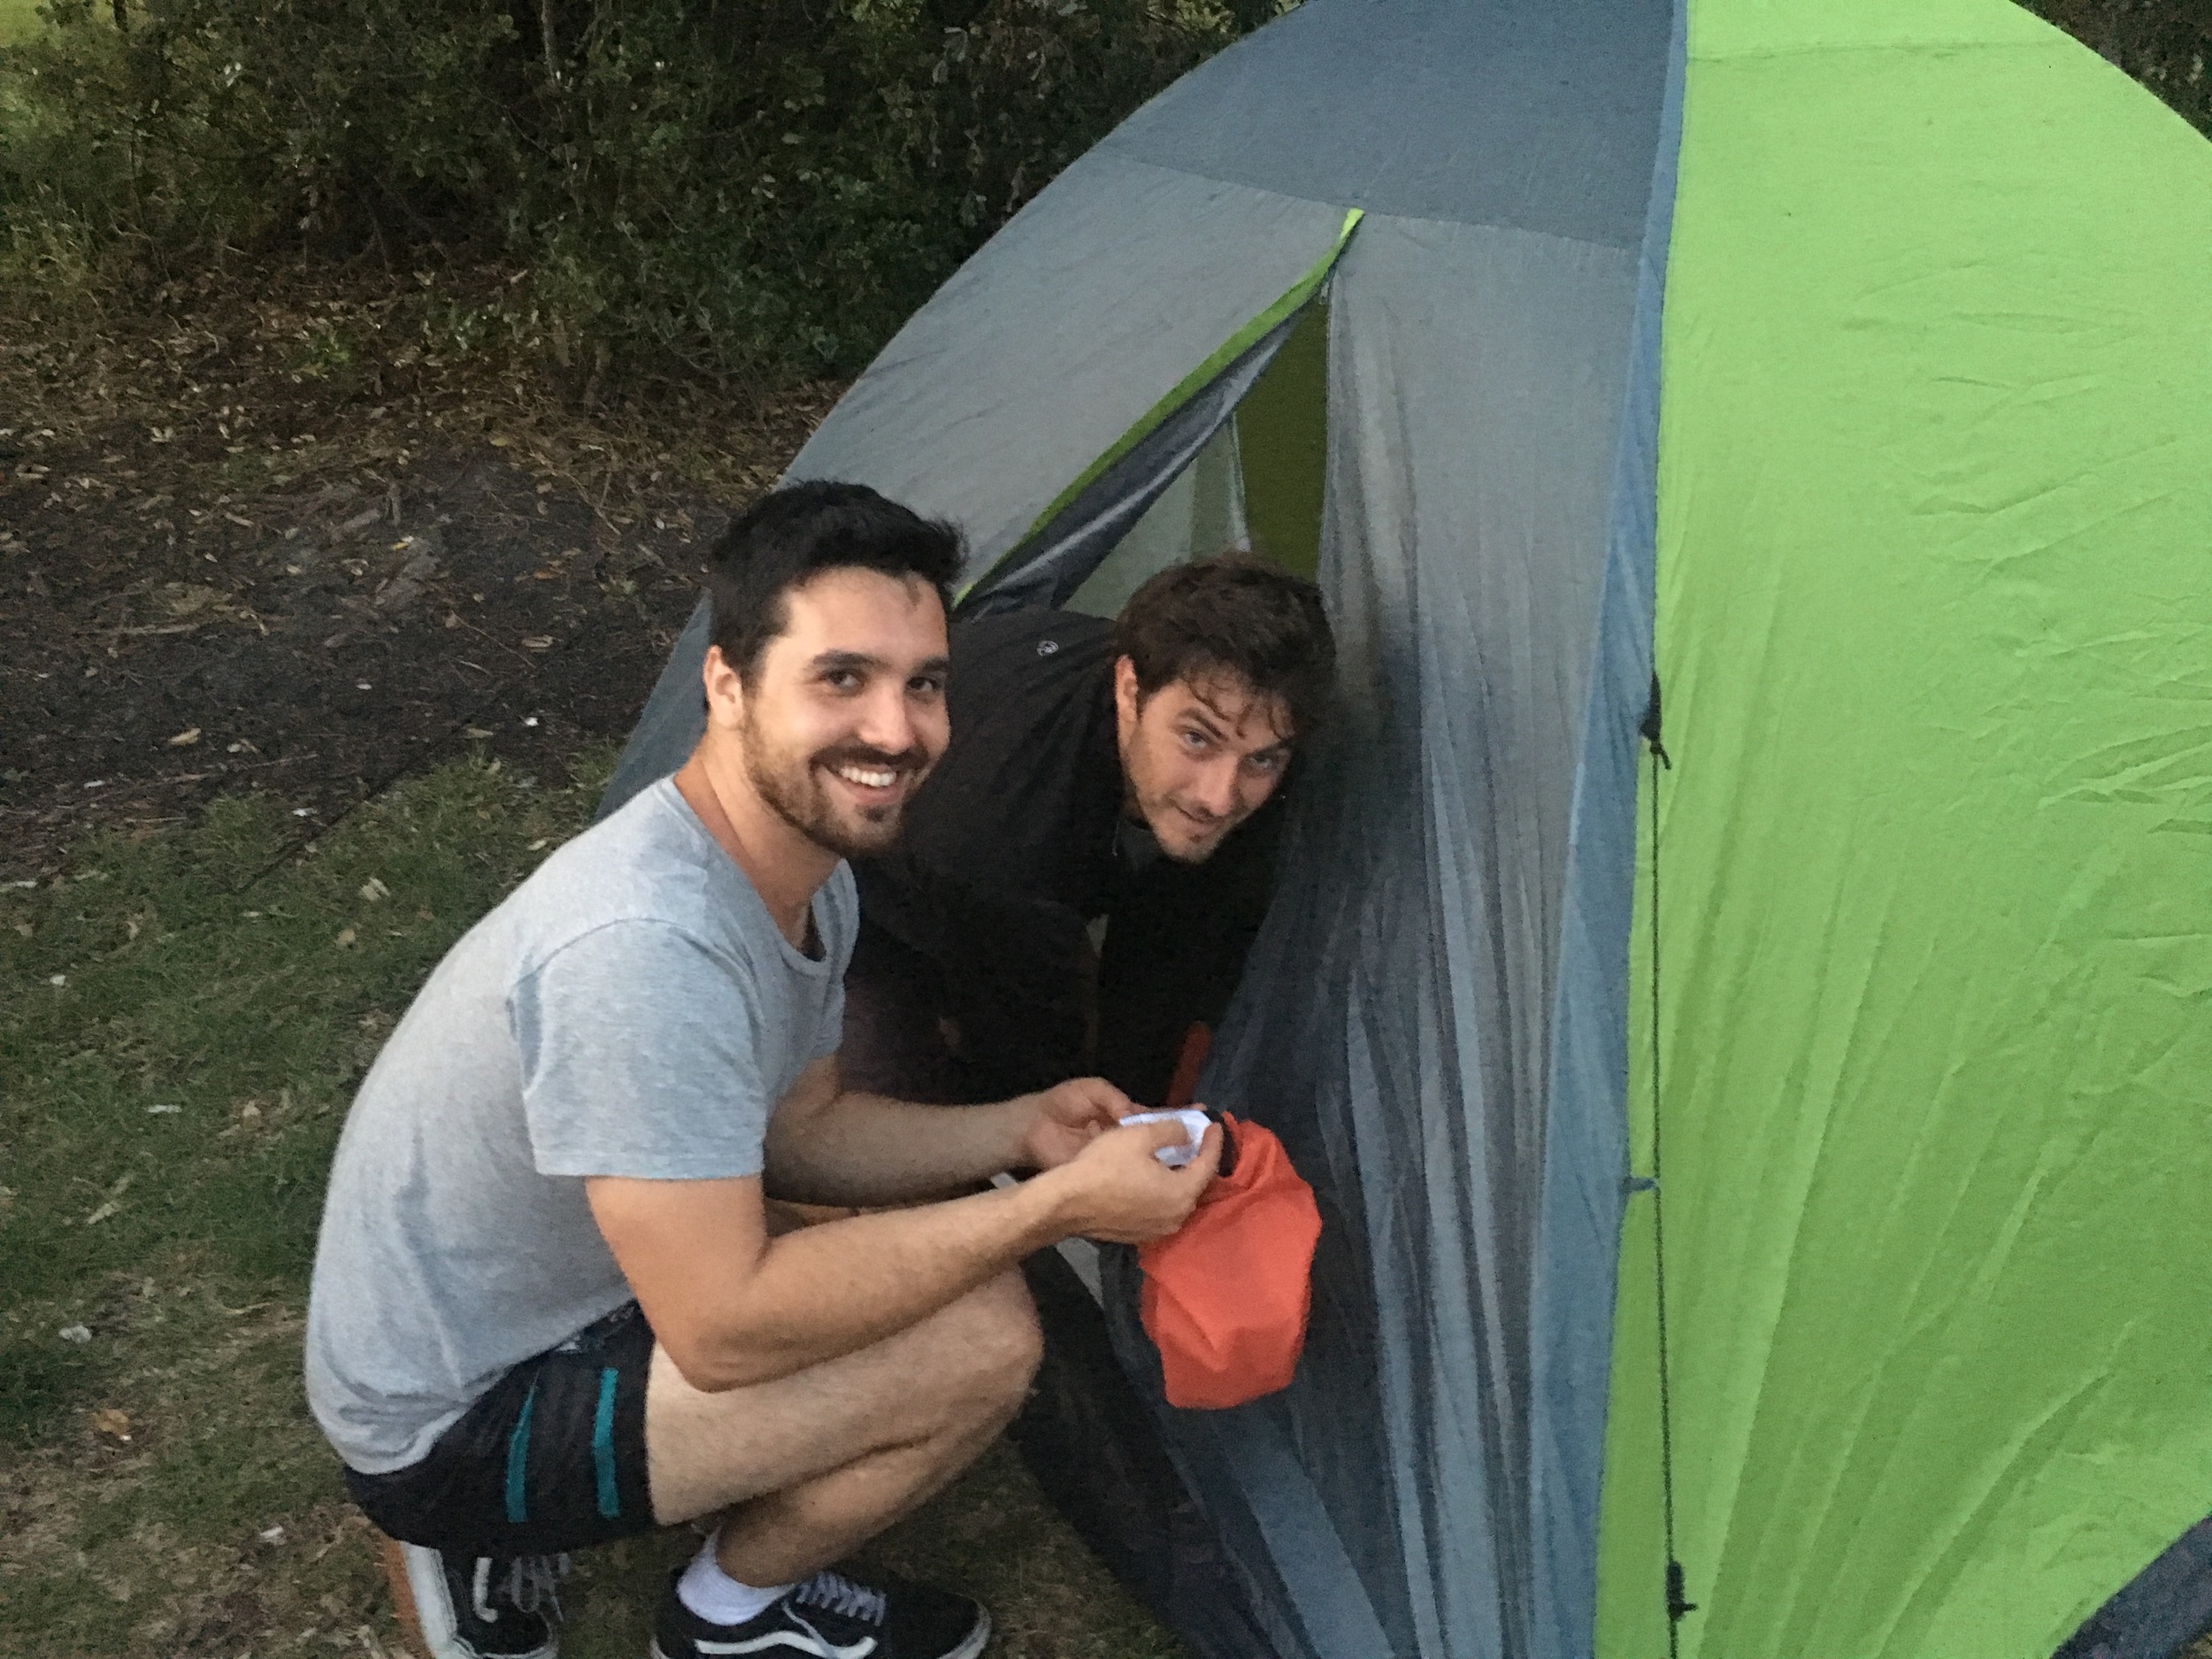 Alex and Cole on tent setup